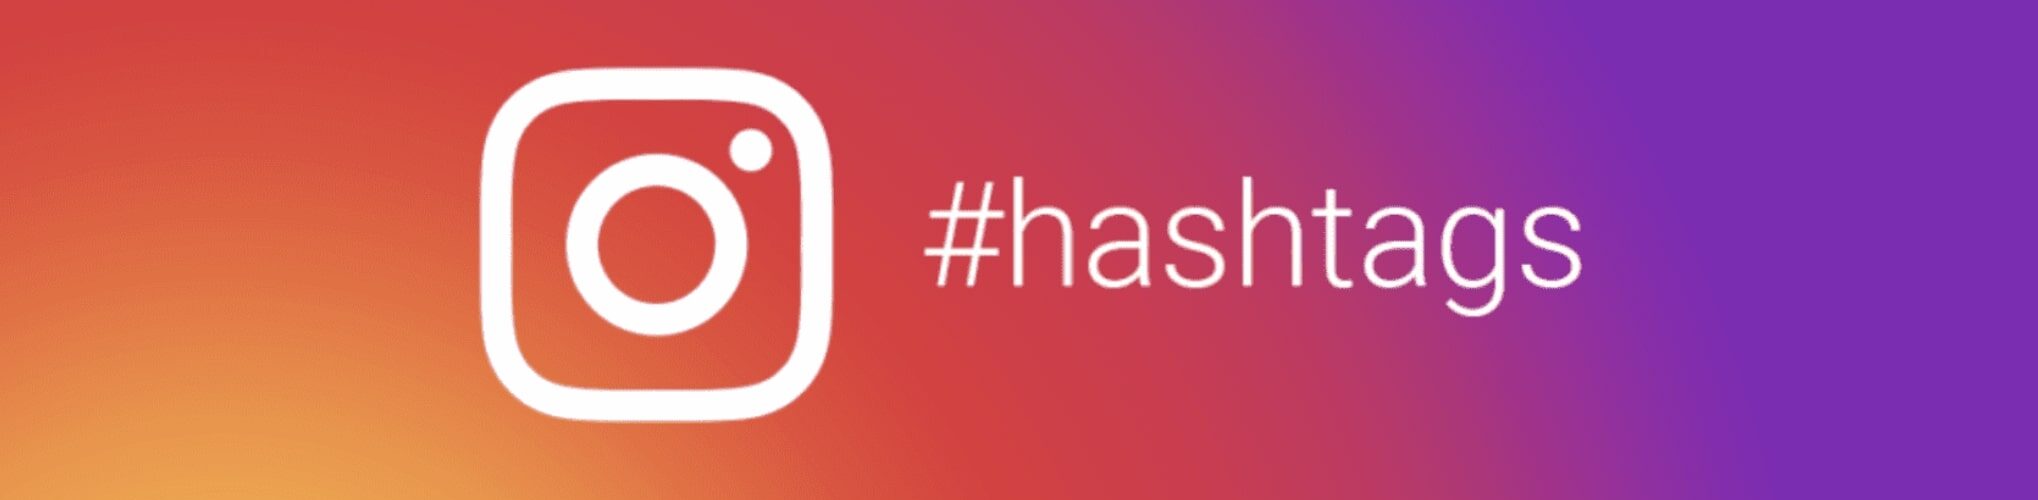 Como utilizar hashtags para aumentar o seu alcance no Instagram